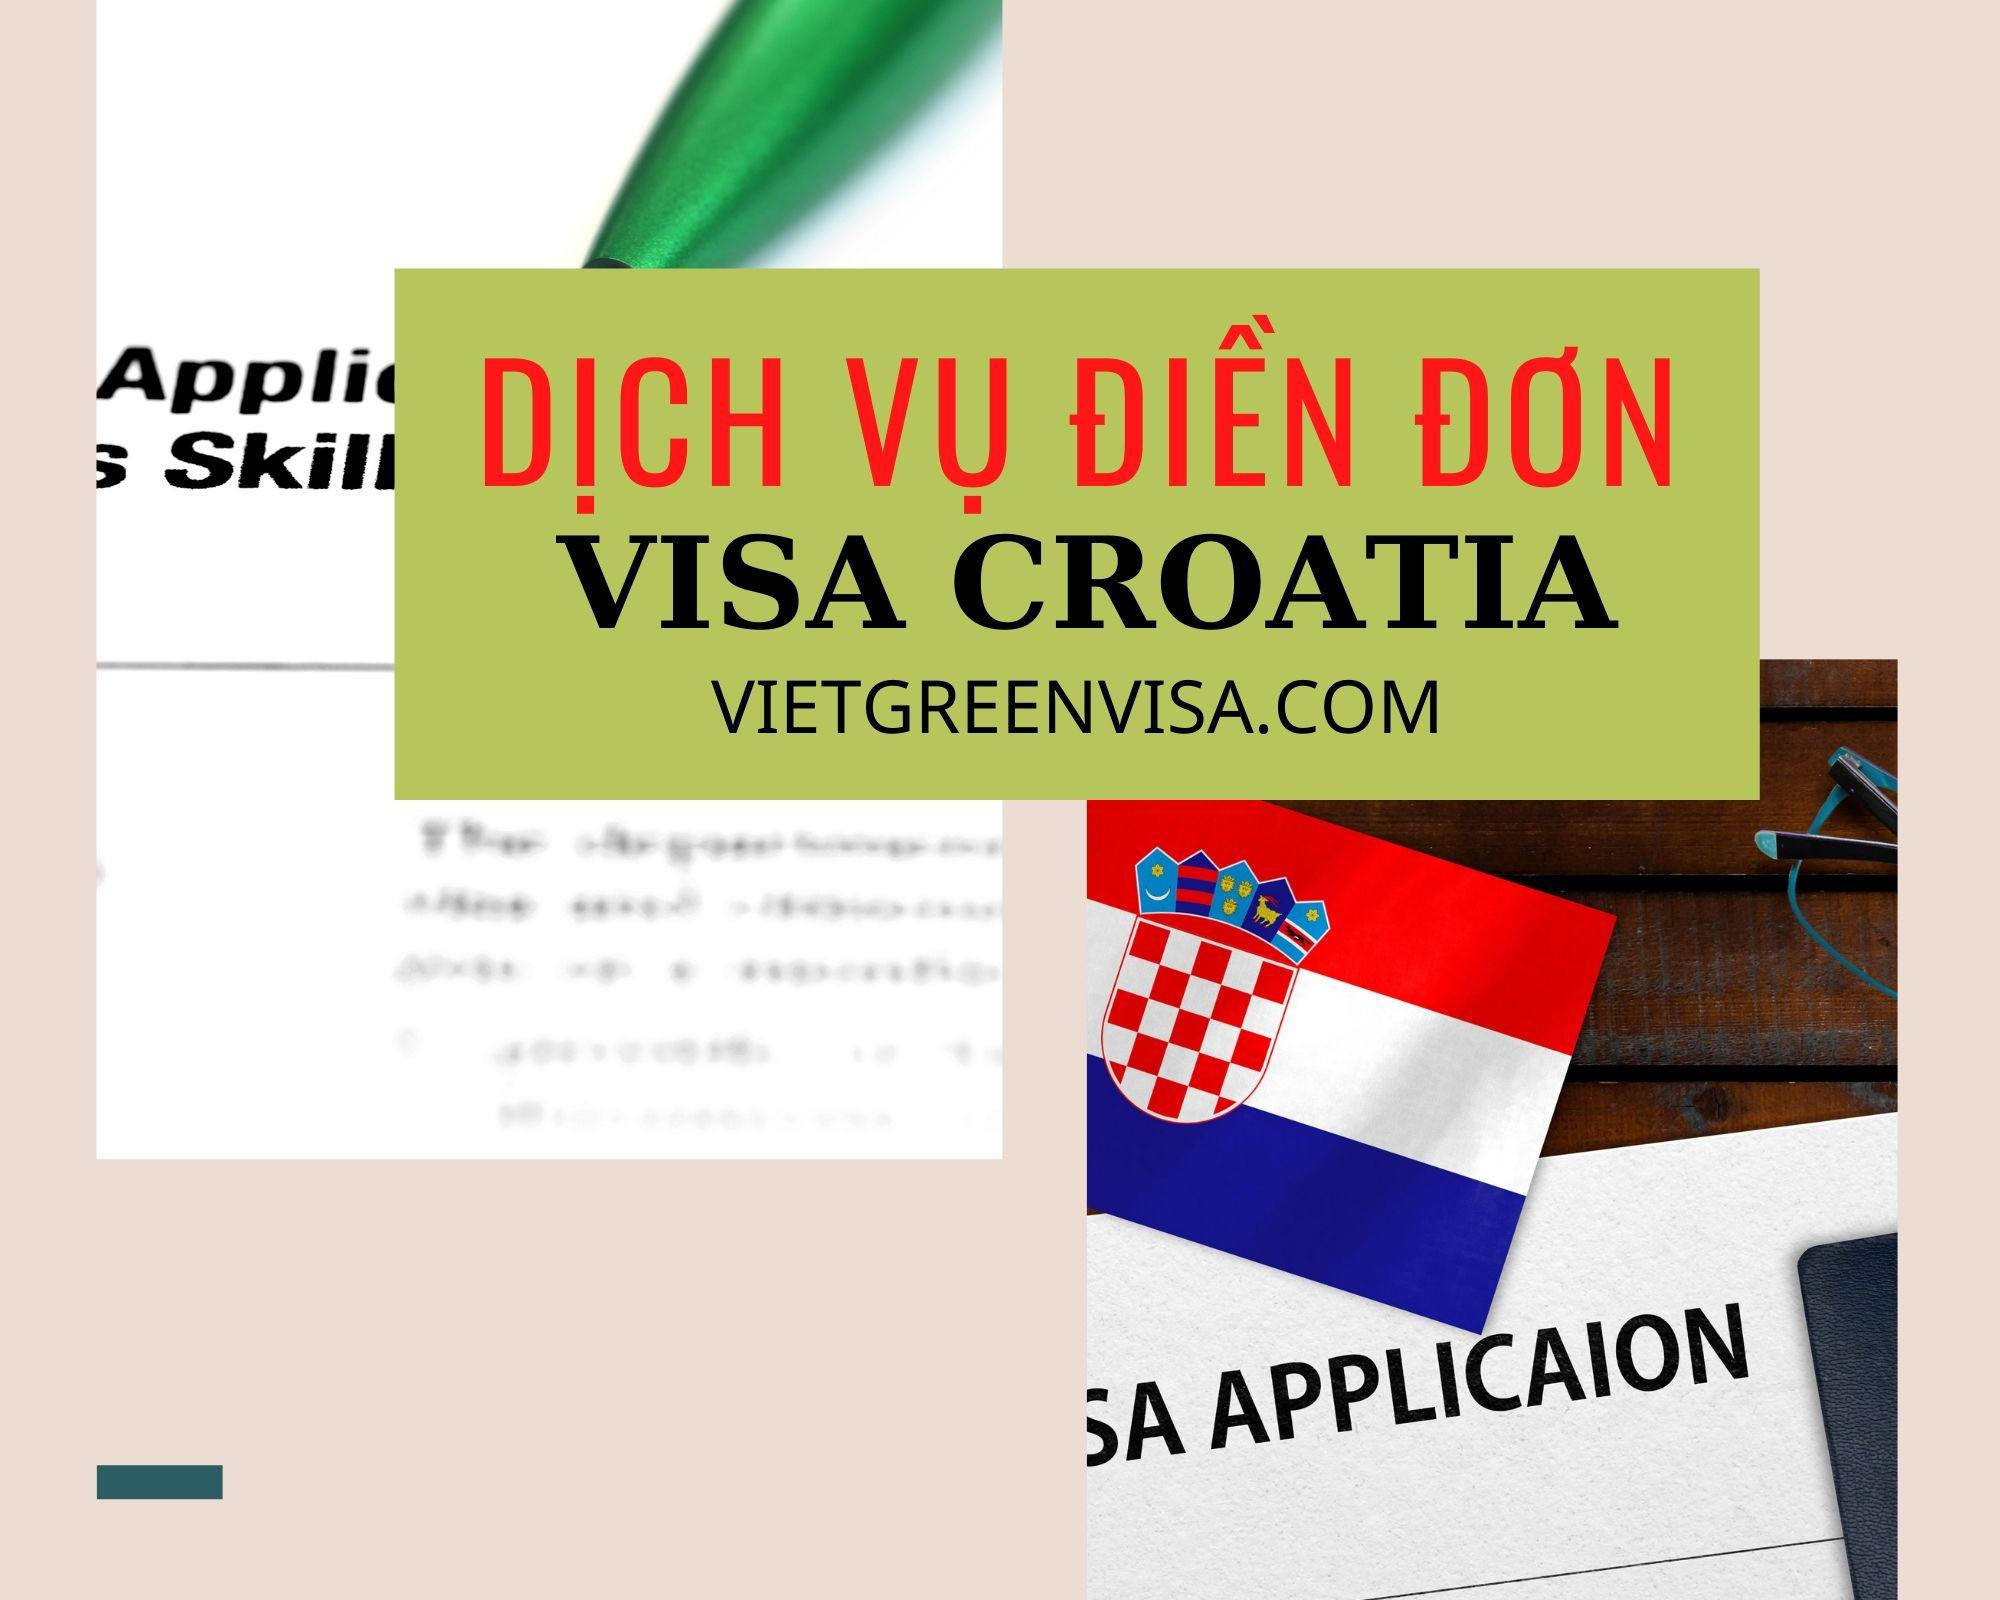 Dịch vụ điền đơn visa Croatia online nhanh gọn